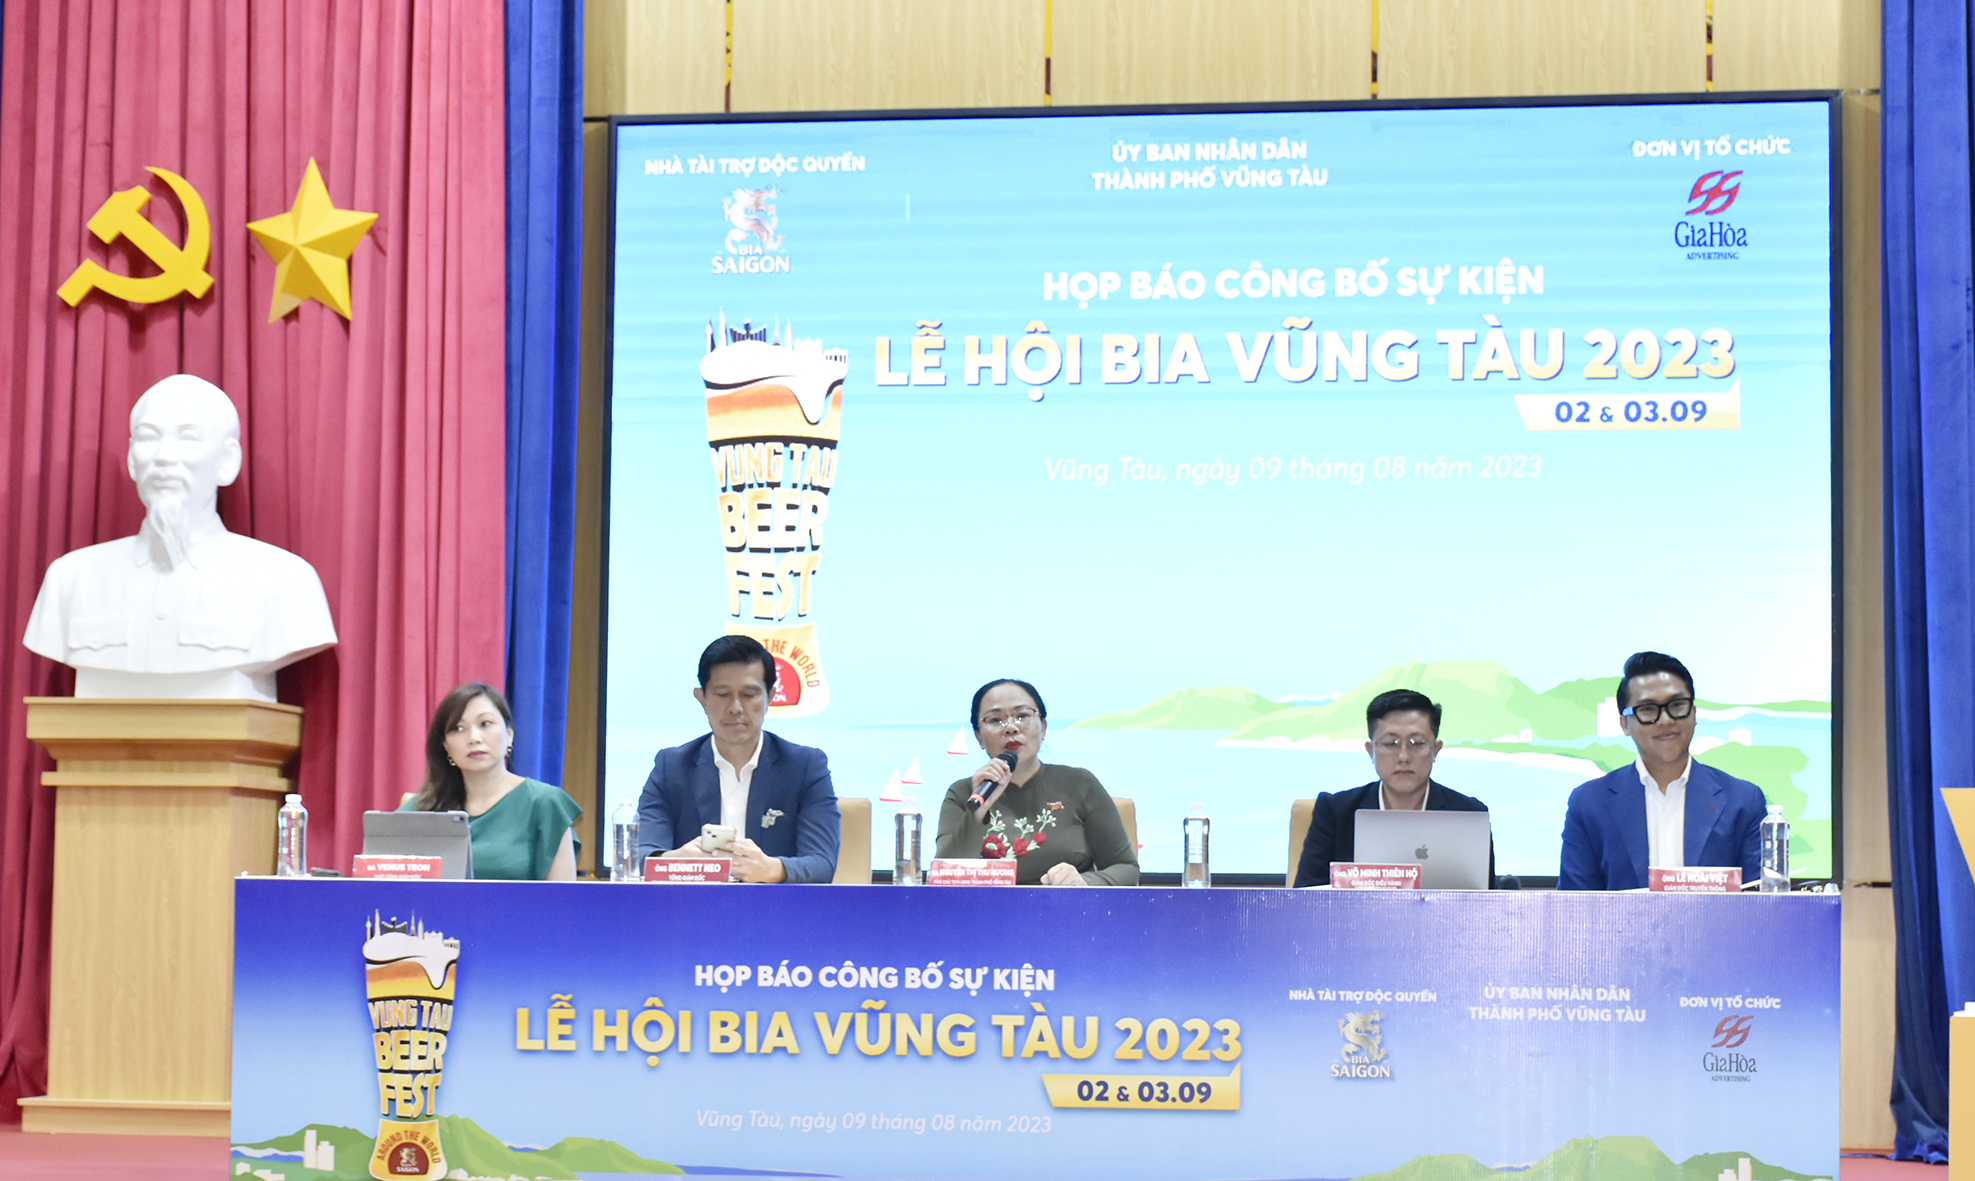 Bà Nguyễn Thị Thu Hương, Phó Chủ tịch UBND TP.Vũng Tàu trả lời câu hỏi của phóng viên tại buổi họp báo.